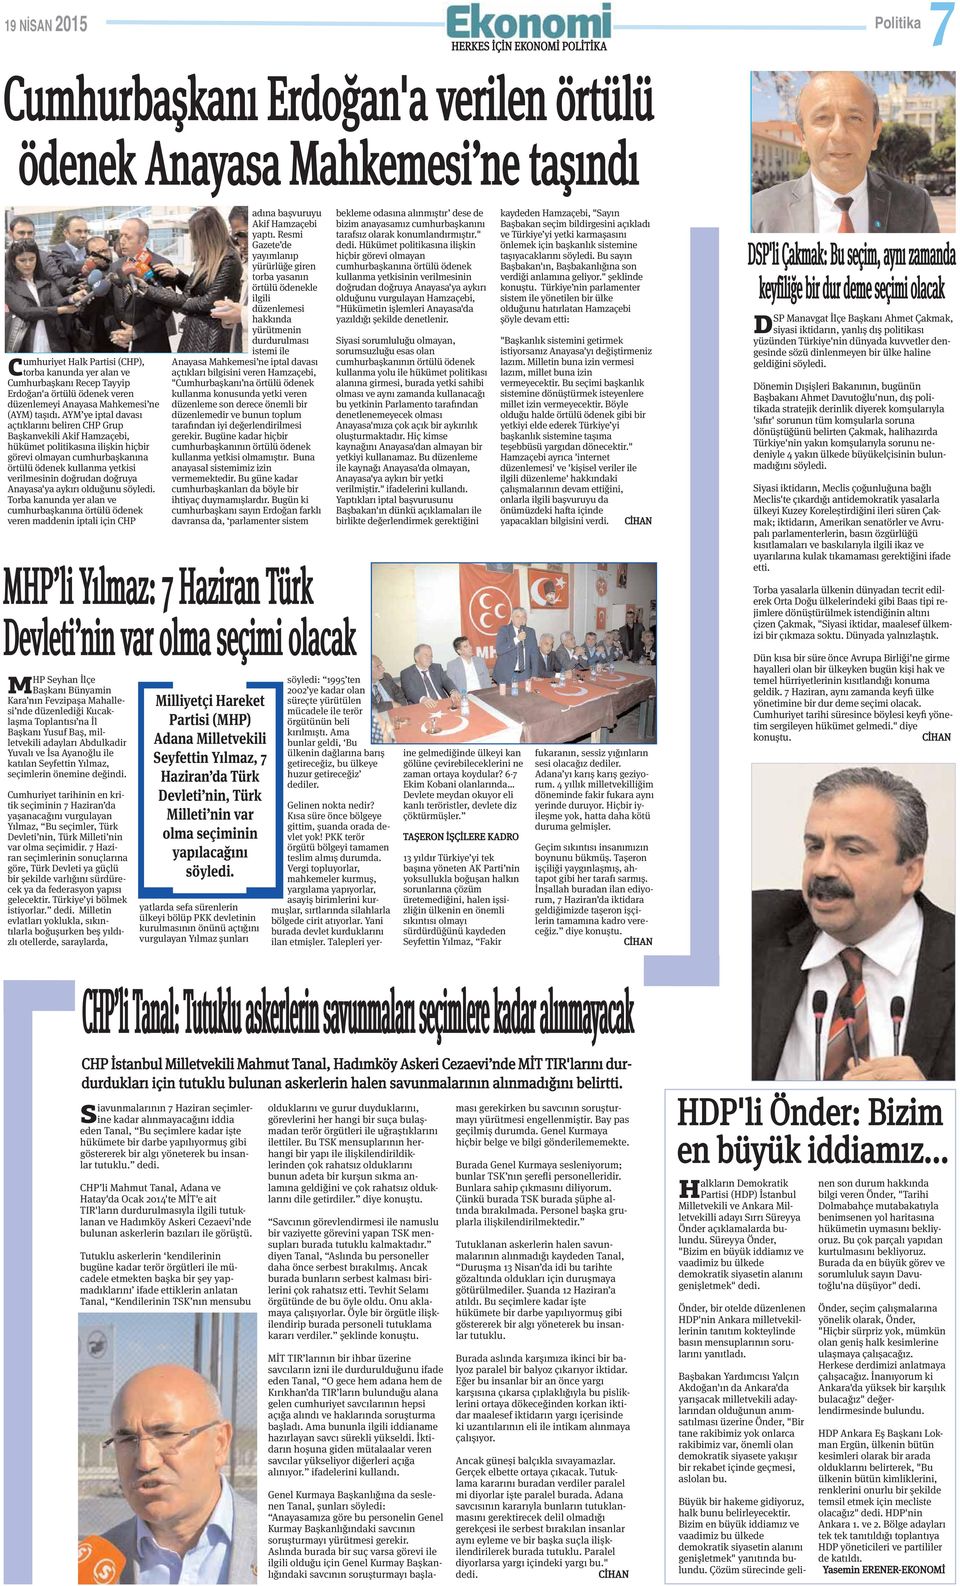 AYM ye iptal davası açtıklarını beliren CHP Grup Başkanvekili Akif Hamzaçebi, hükümet politikasına ilişkin hiçbir görevi olmayan cumhurbaşkanına örtülü ödenek kullanma yetkisi verilmesinin doğrudan